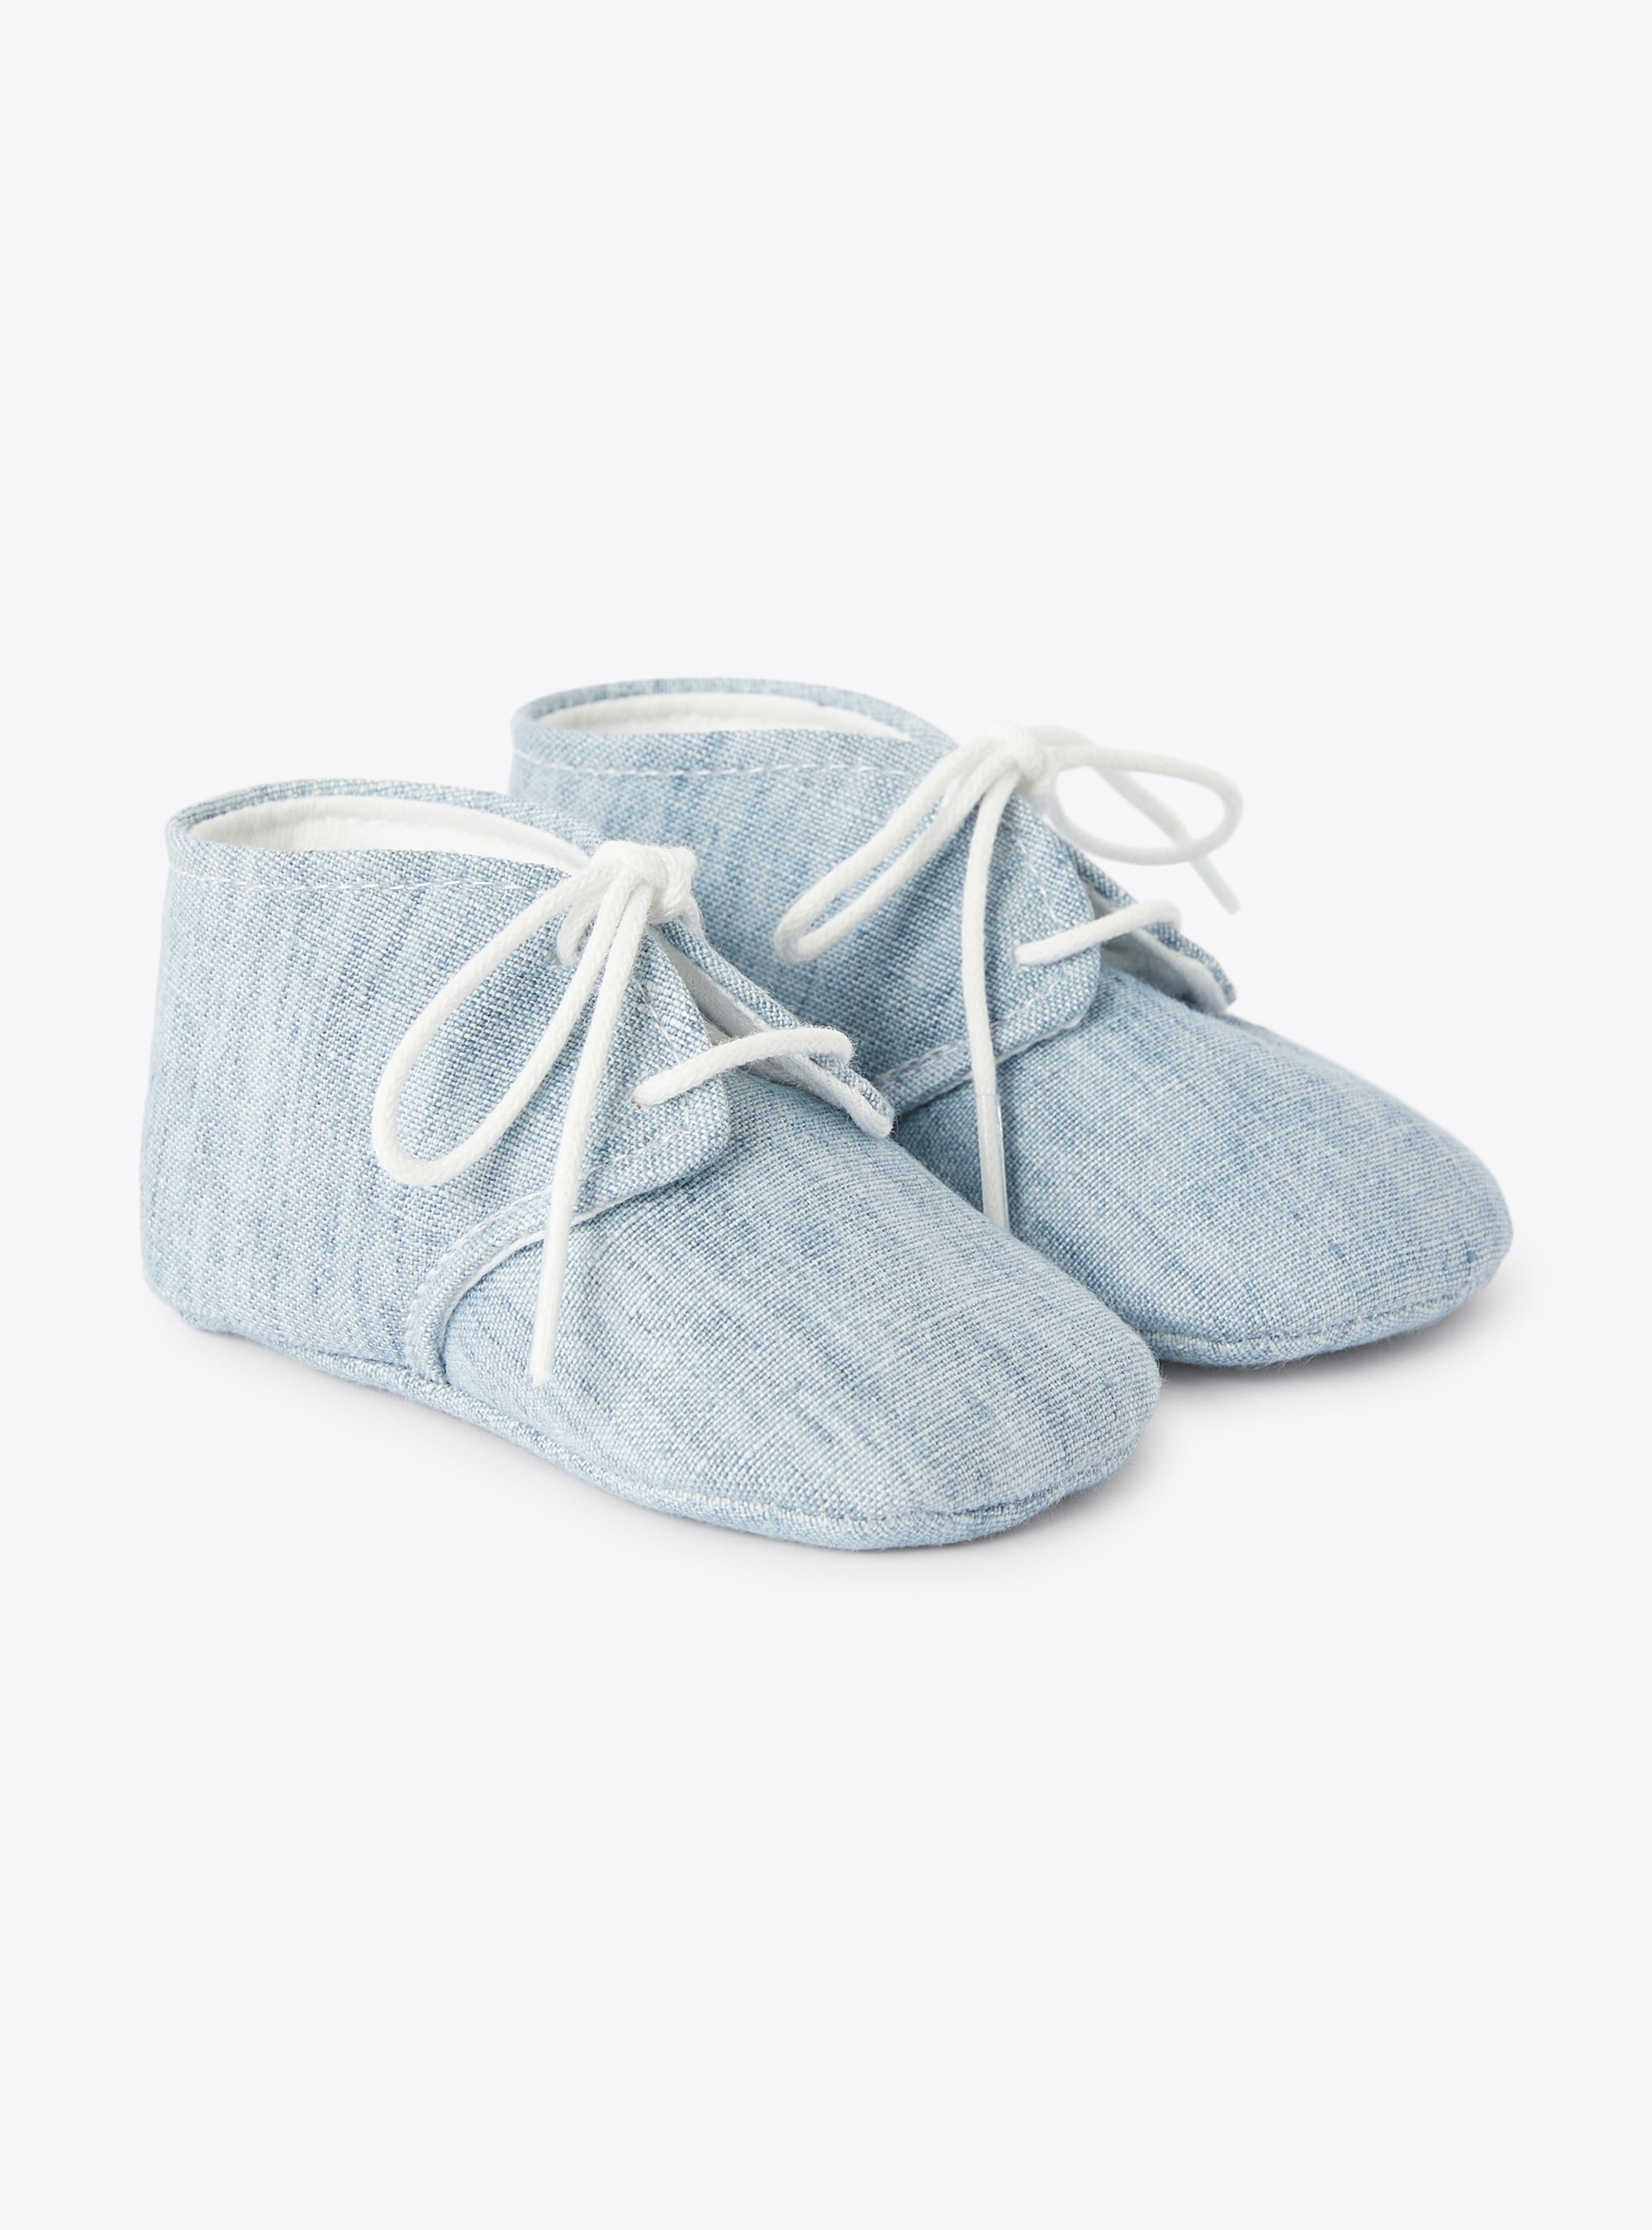 Chaussures pour bébé garçon en lin bleu ciel - Bleu clair | Il Gufo